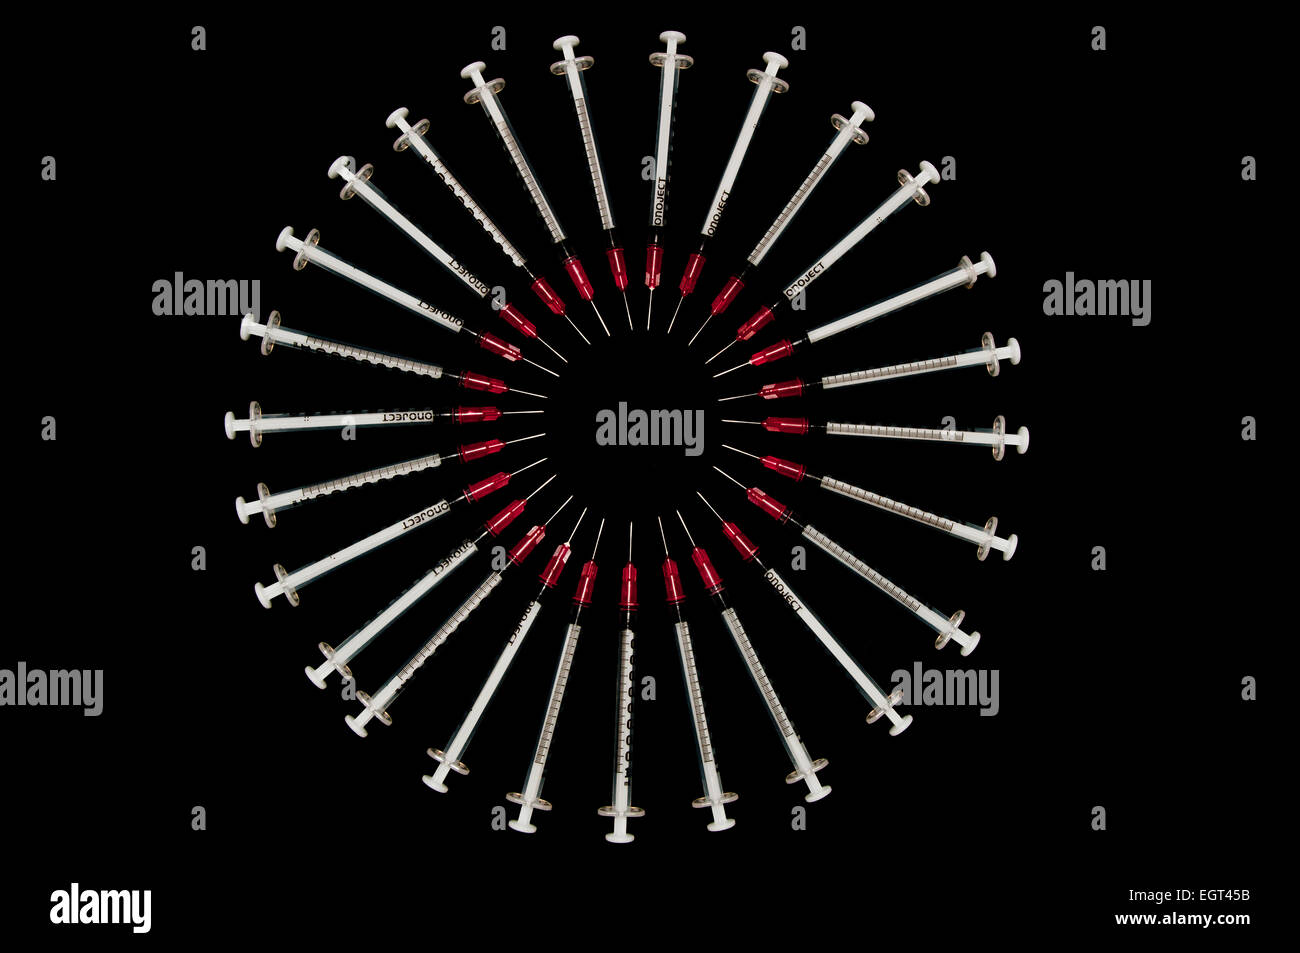 Spritzen in einem Kreis angeordnet verwendet; Konzept für Drogenmissbrauch erschossen Stockfoto